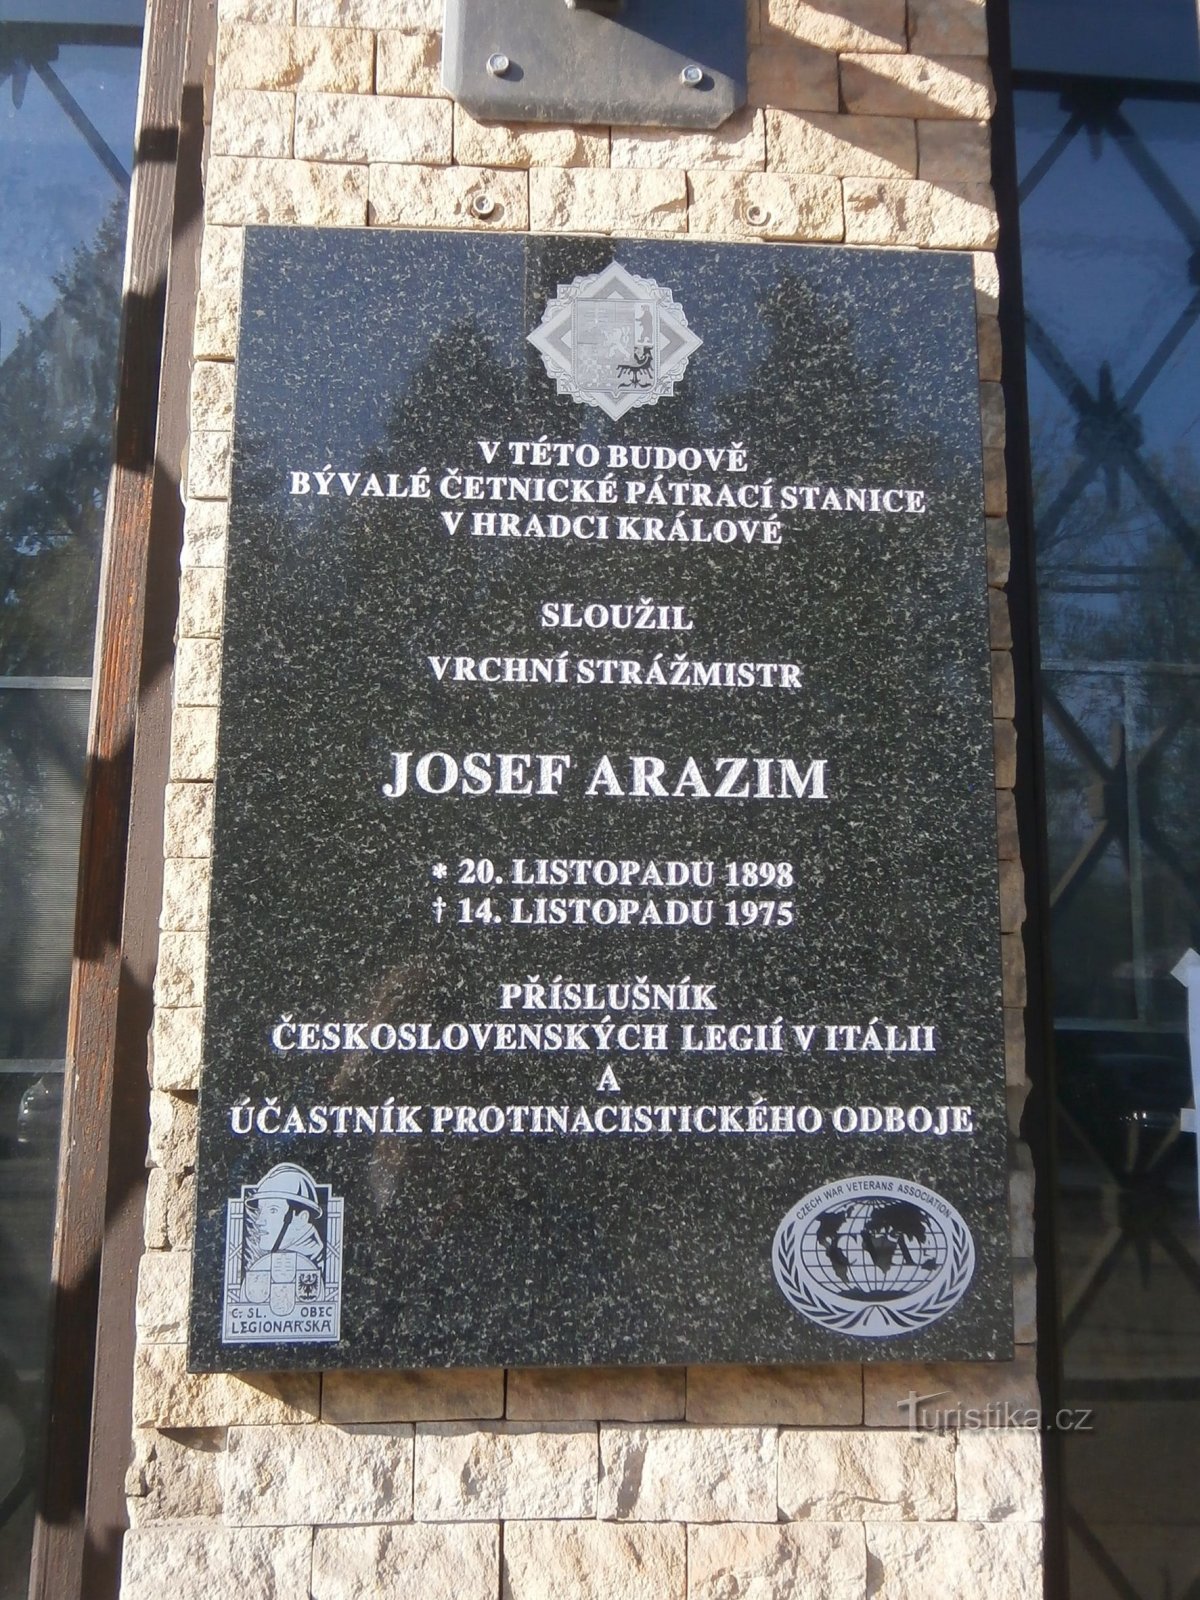 Josef Arazím emléktábla (Hradec Králové, 14.4.2017. április XNUMX.)